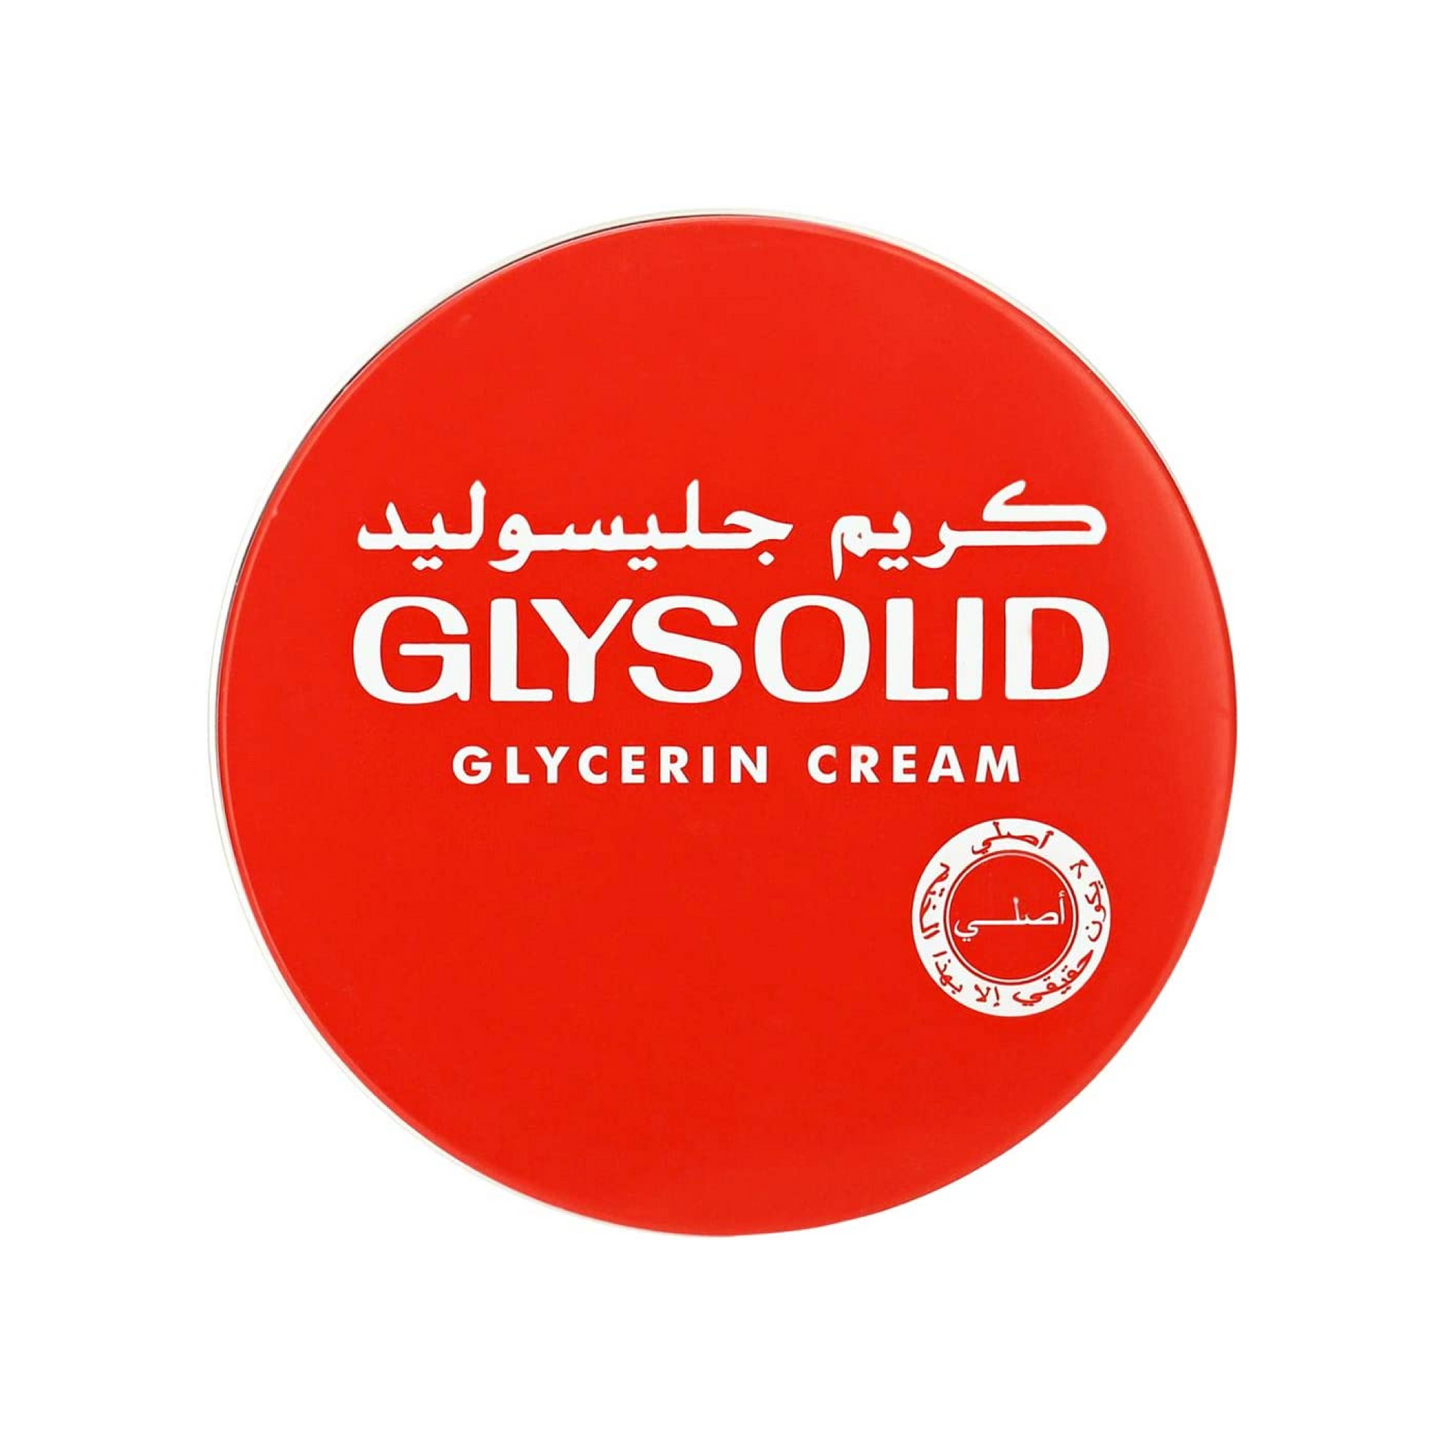 Glysolid Glycerine Cream 100ml